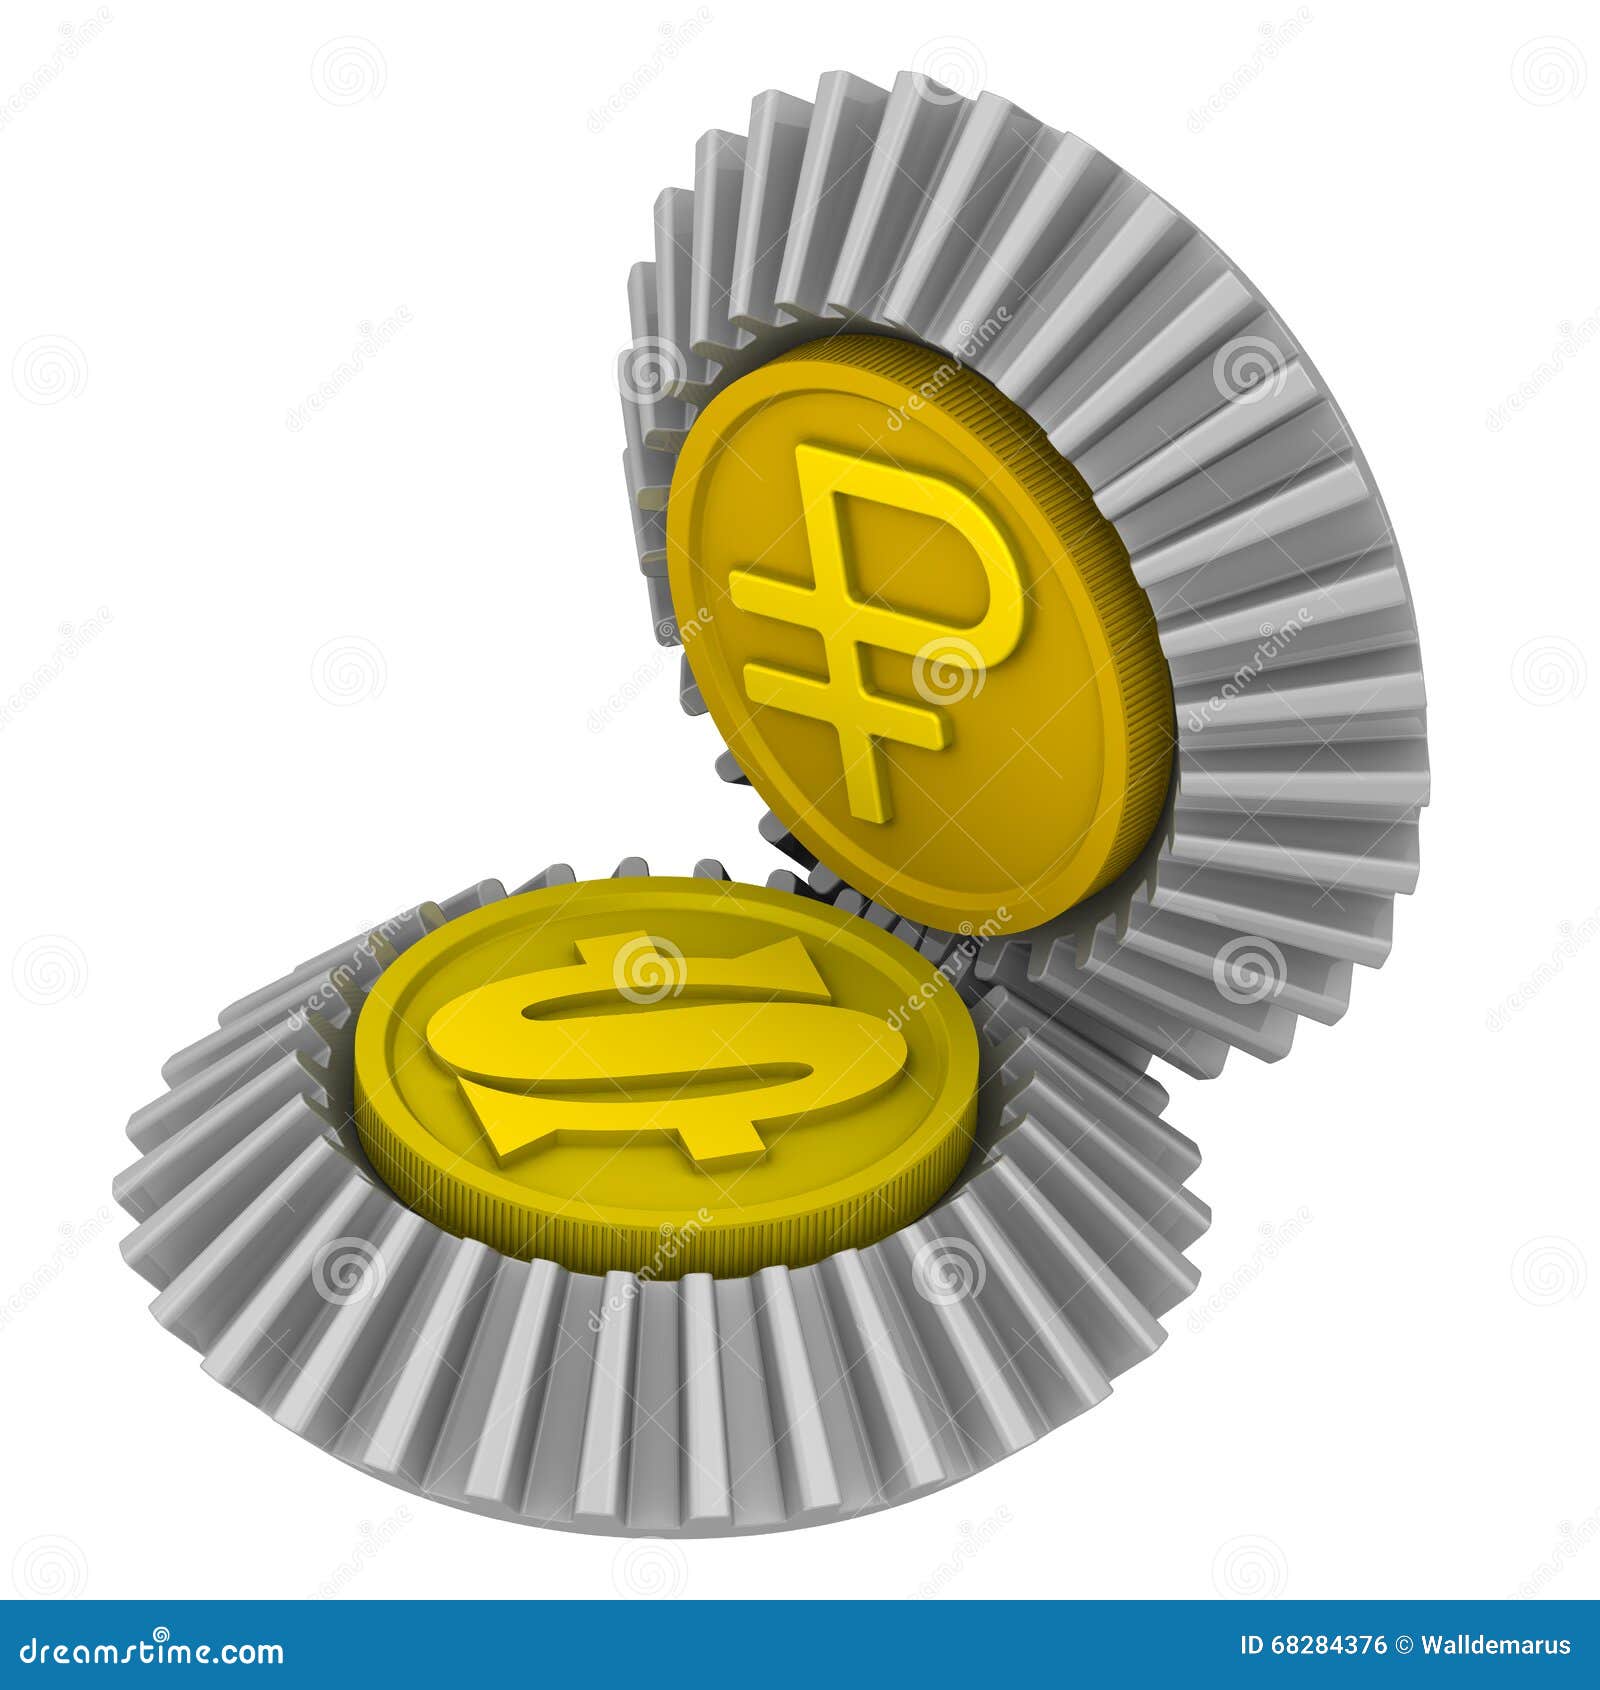 A Cotação Do Dólar Americano E Do Rublo De Russo Ilustração Stock -  Ilustração de detalhe, conceito: 68284376